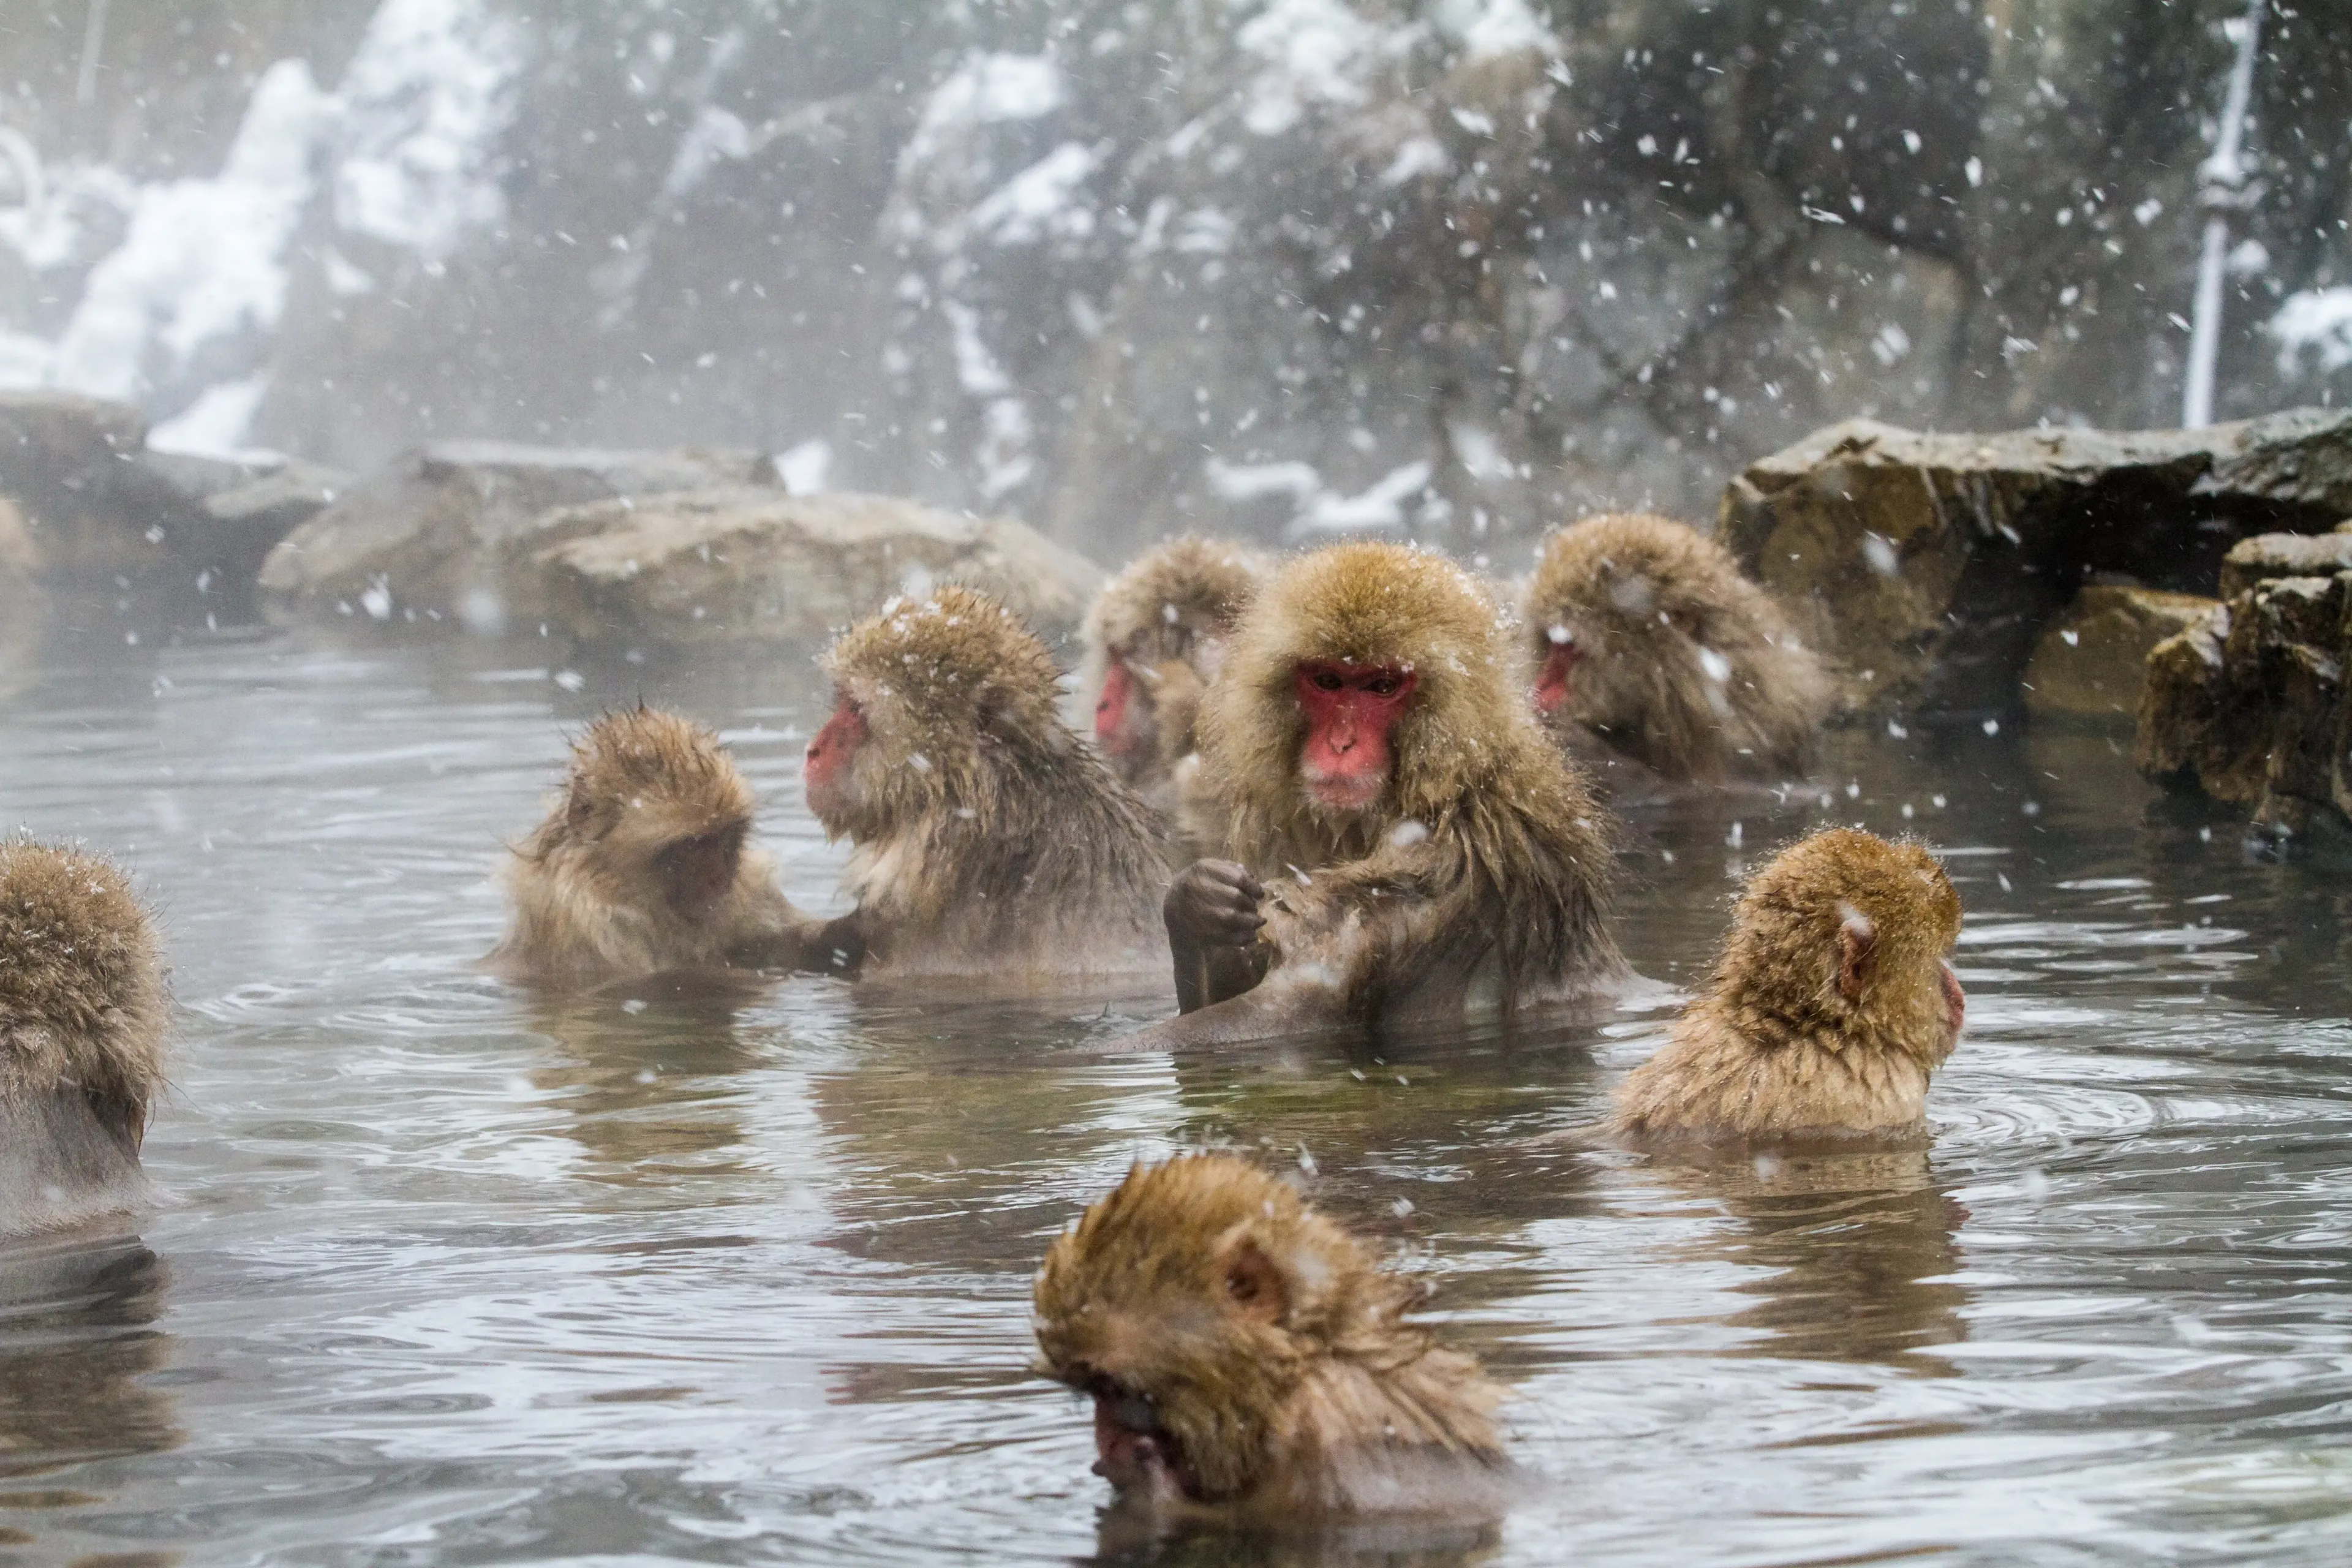 Животные купаются. Парк Джигокудани Япония. Парк снежных обезьян Дзигокудани. Макаки Джигокудани. Японские макаки в горячих источниках.